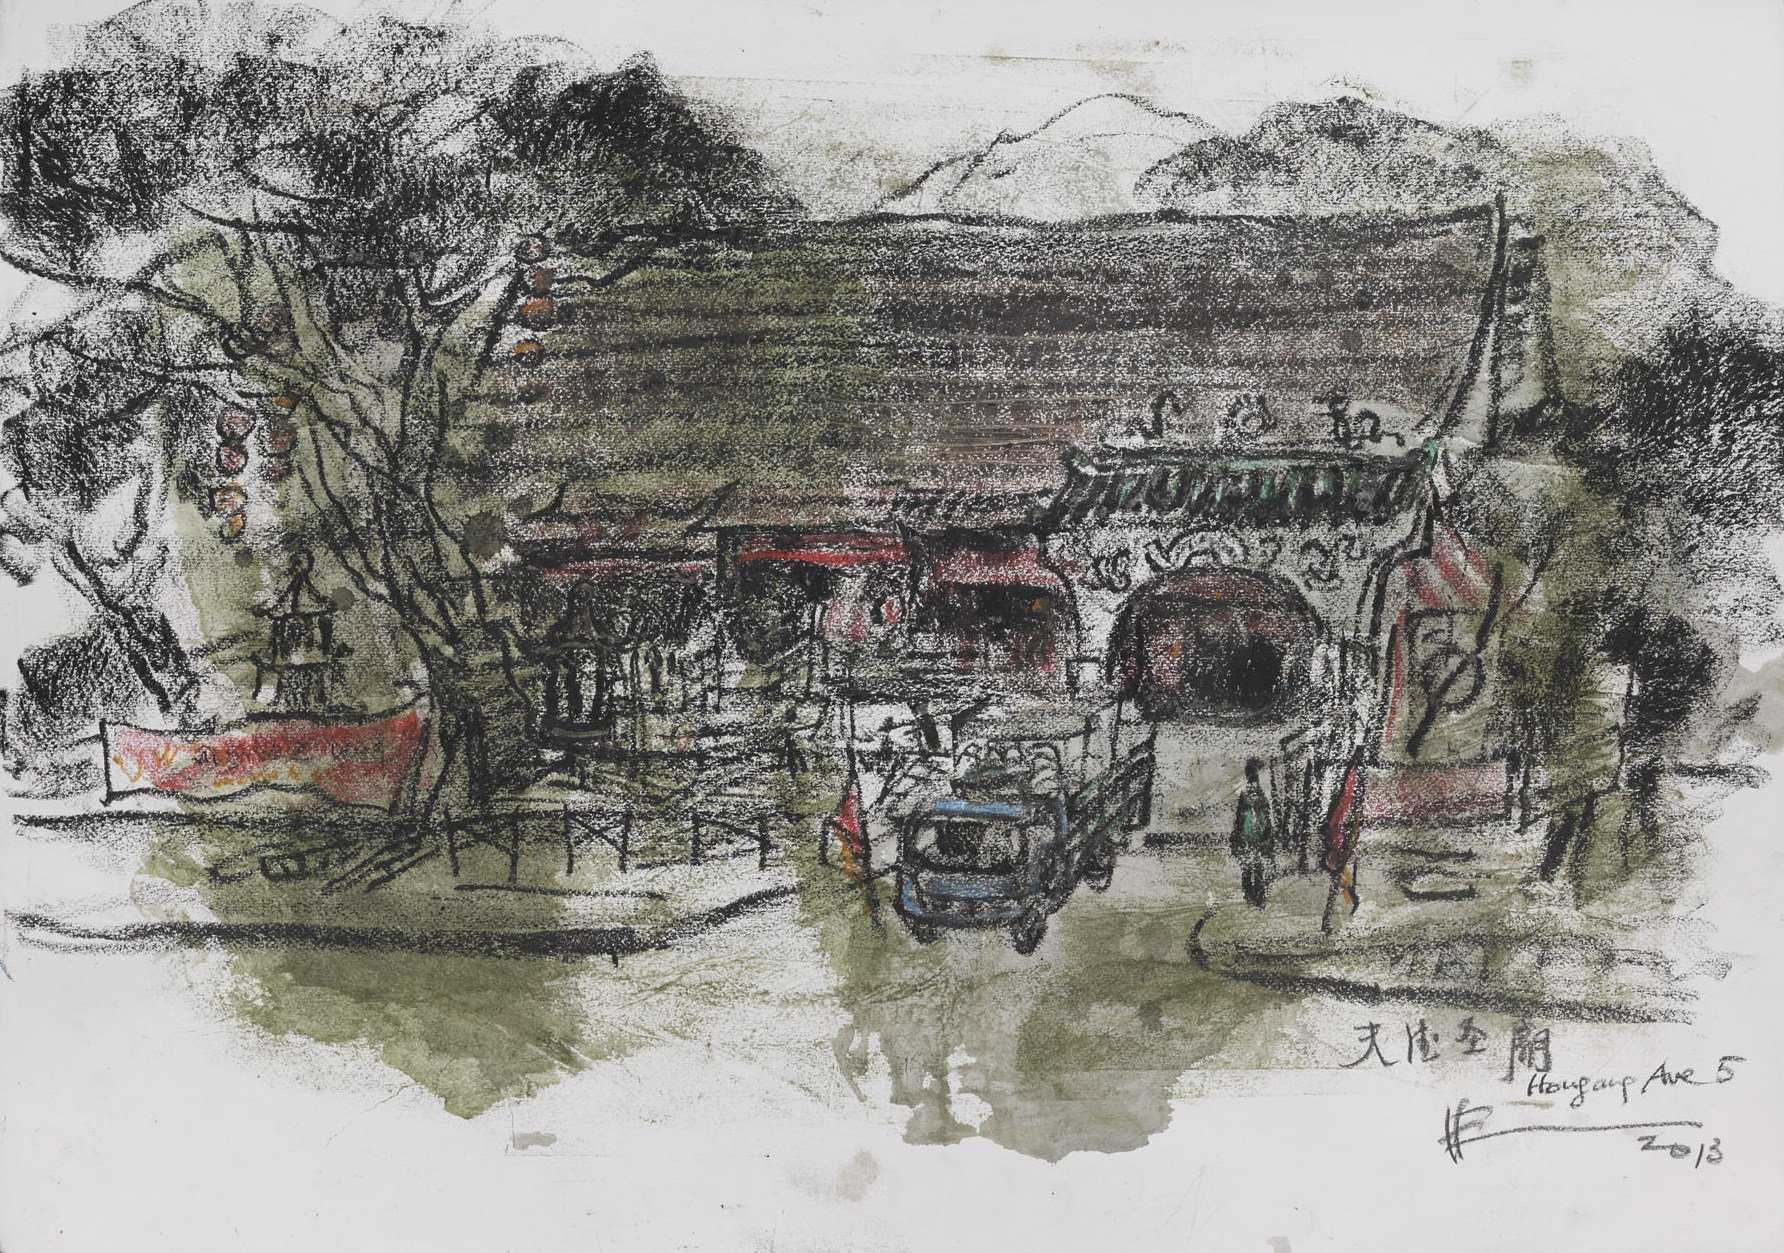 Tian De Sheng Miao Temple [Tian De Temple]